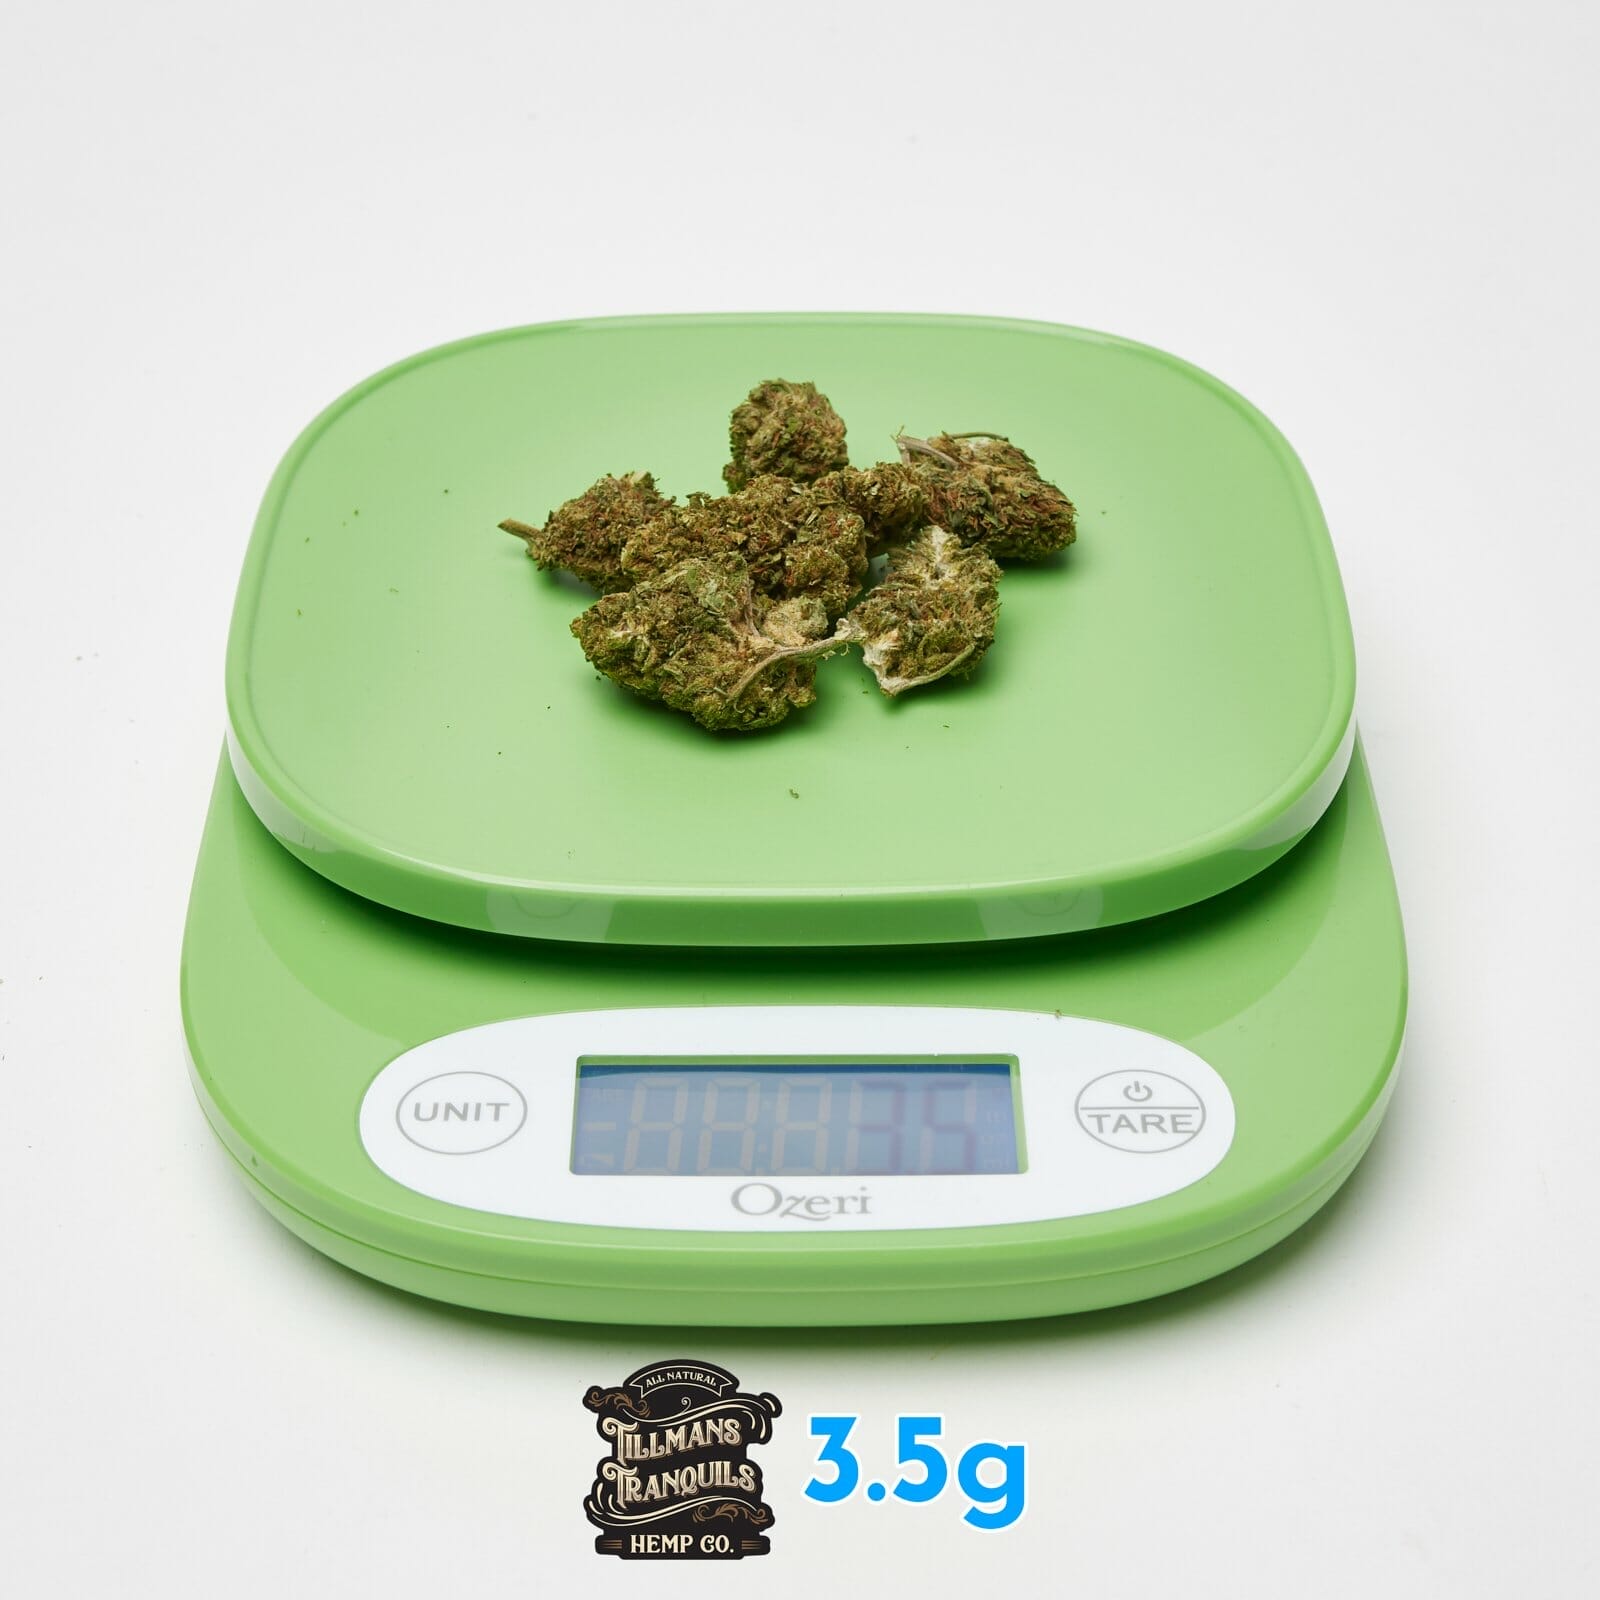 3.5 grams of hemp